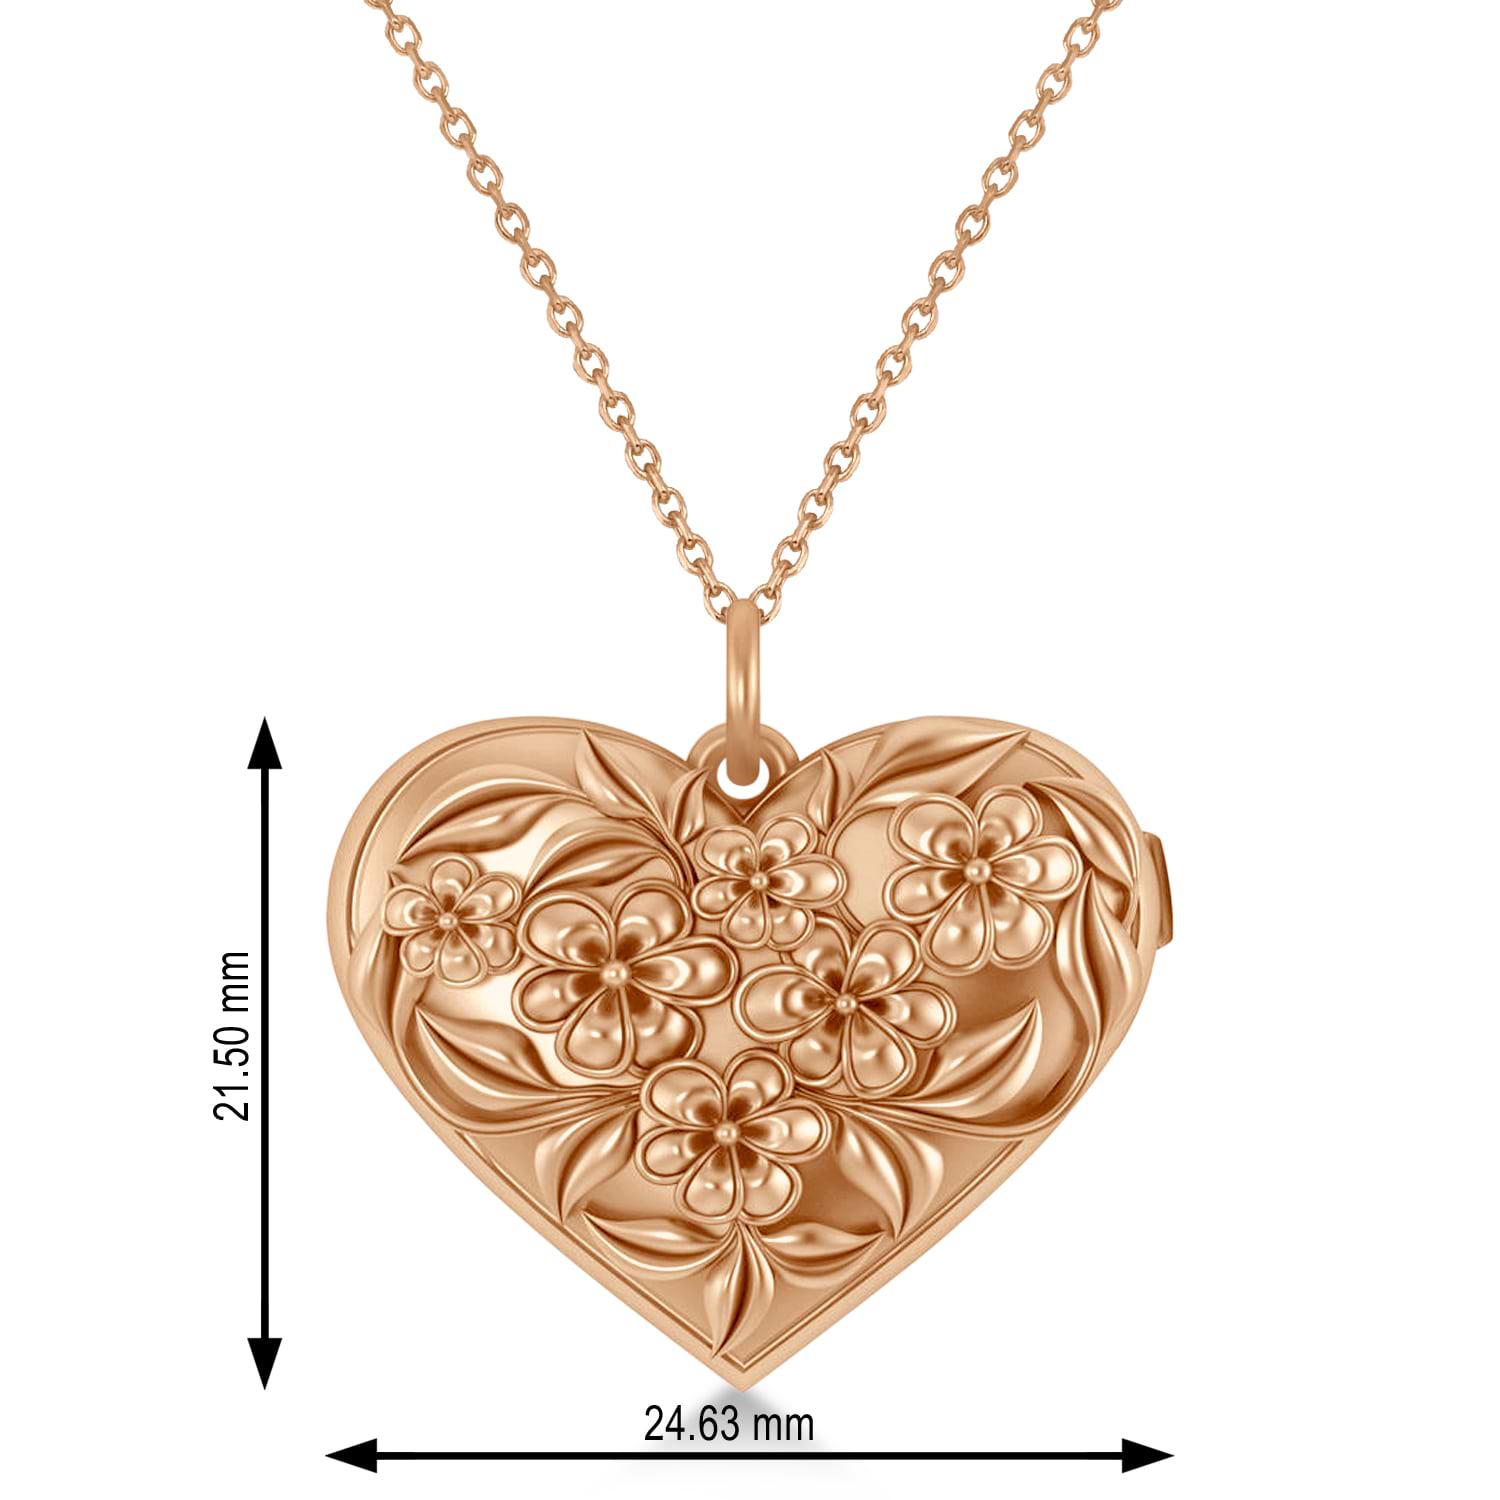 Floral Designed Heart Locket Necklace 14k Rose Gold